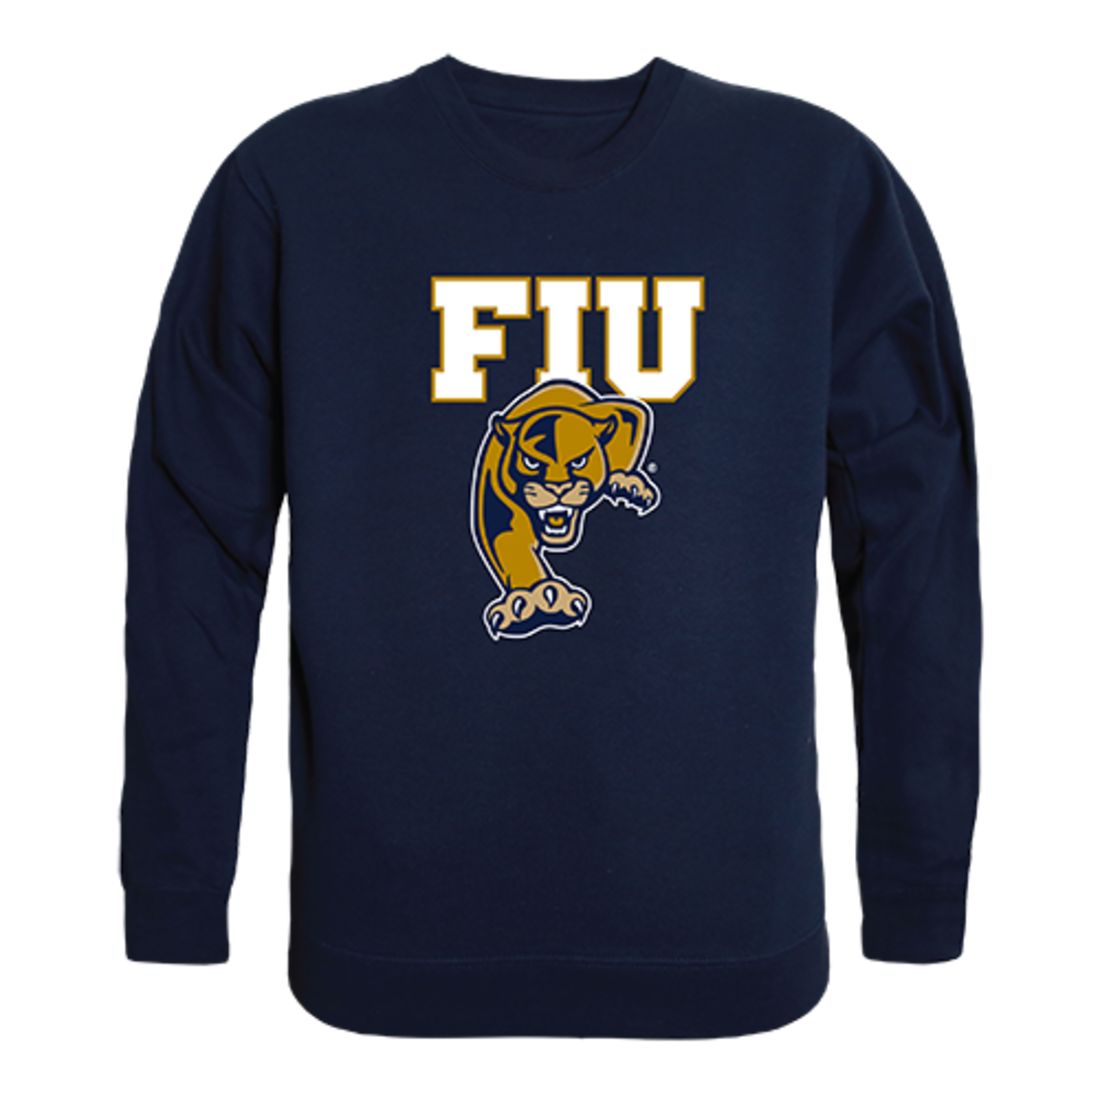 The Panthers - Florida Panthers - Crewneck Sweatshirt